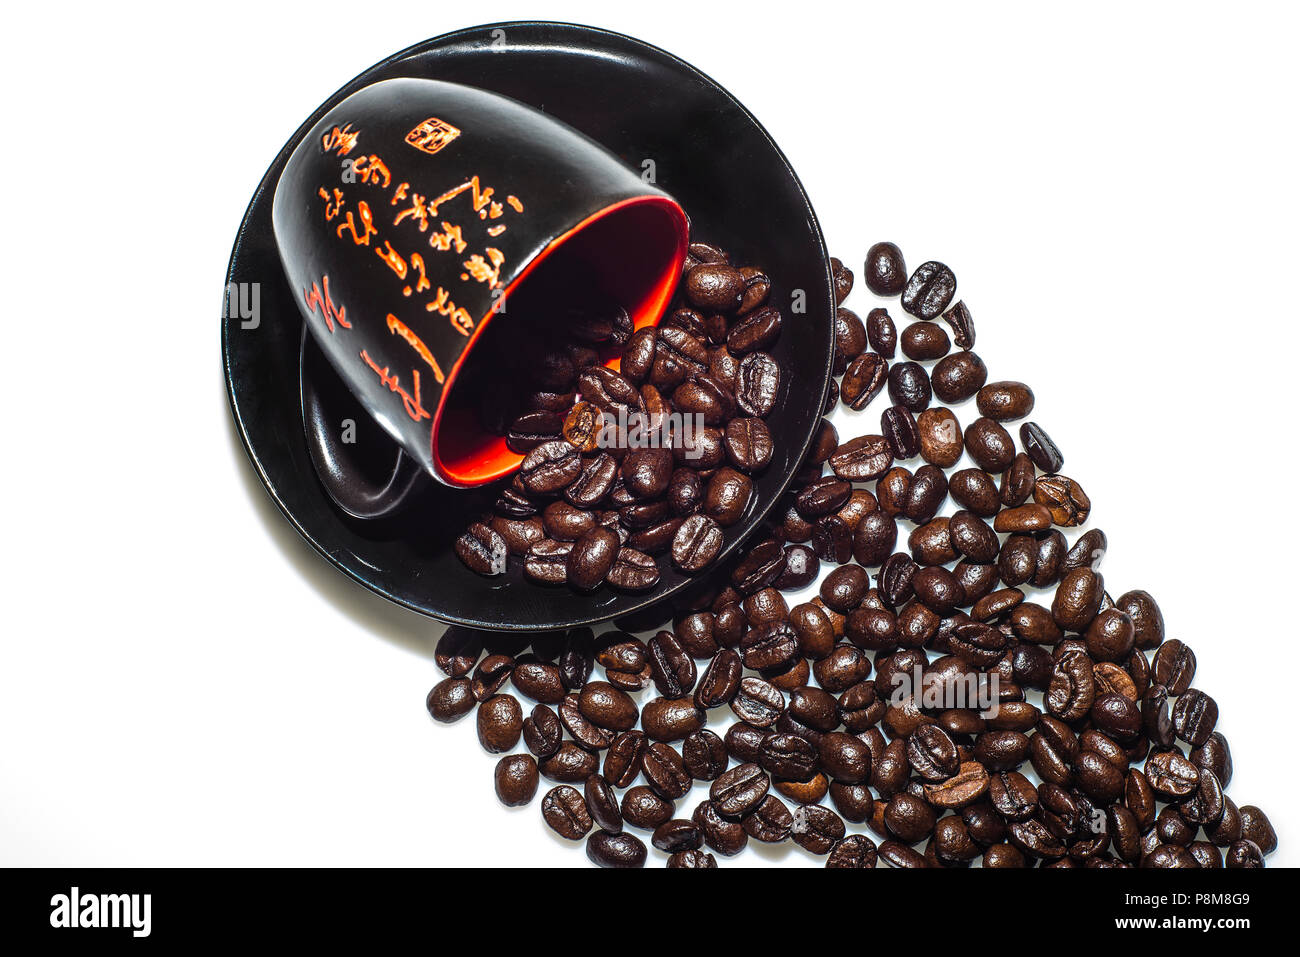 Eine Grosse Auswahl An Kostenlosen Kaffee Finden Sie Eine Andere Art Von Bilder Von Kaffee Inklusive Bilder Von Tassen Kaffee Kaffeetassen Kaffeebohnen Stockfotografie Alamy